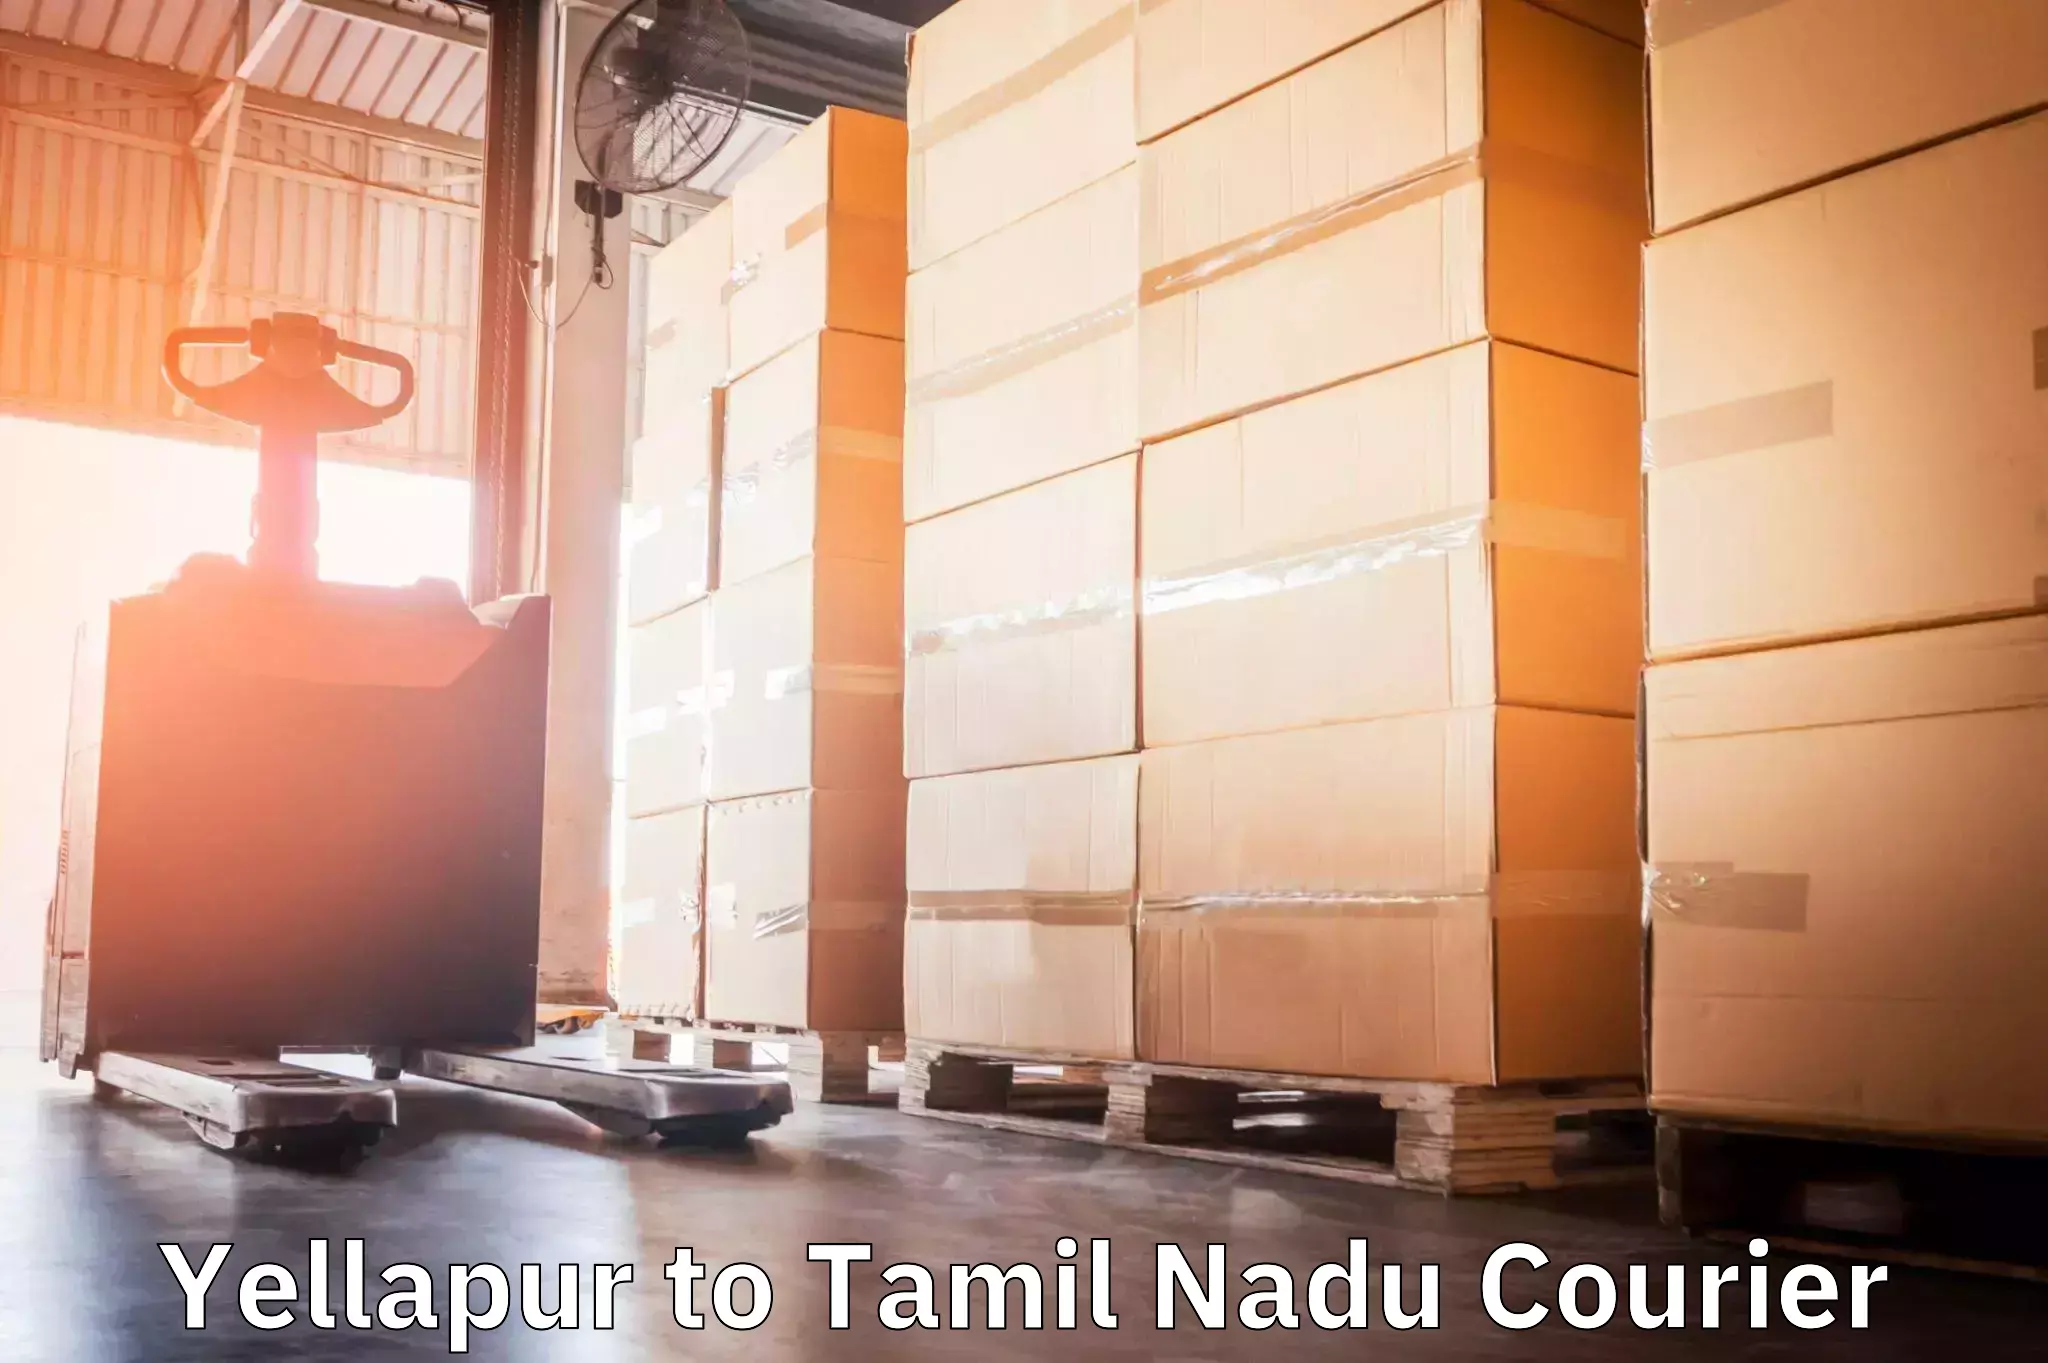 Easy return solutions in Yellapur to Tamil Nadu